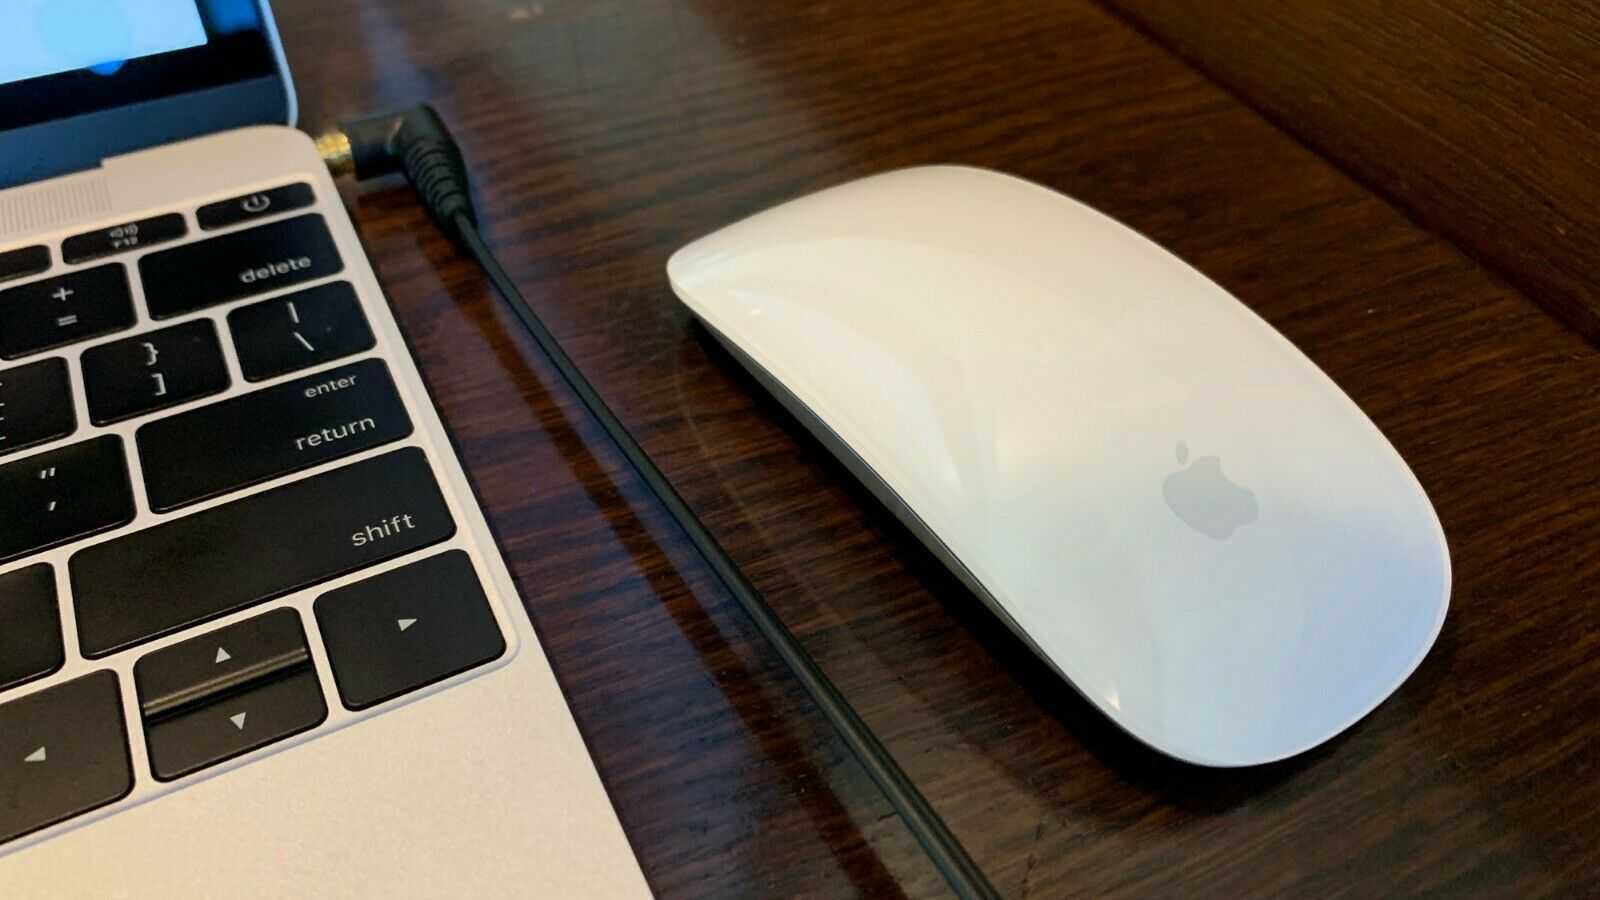 Magic mouse 2 или magic trackpad 2: различия в использовании на mac и ipad